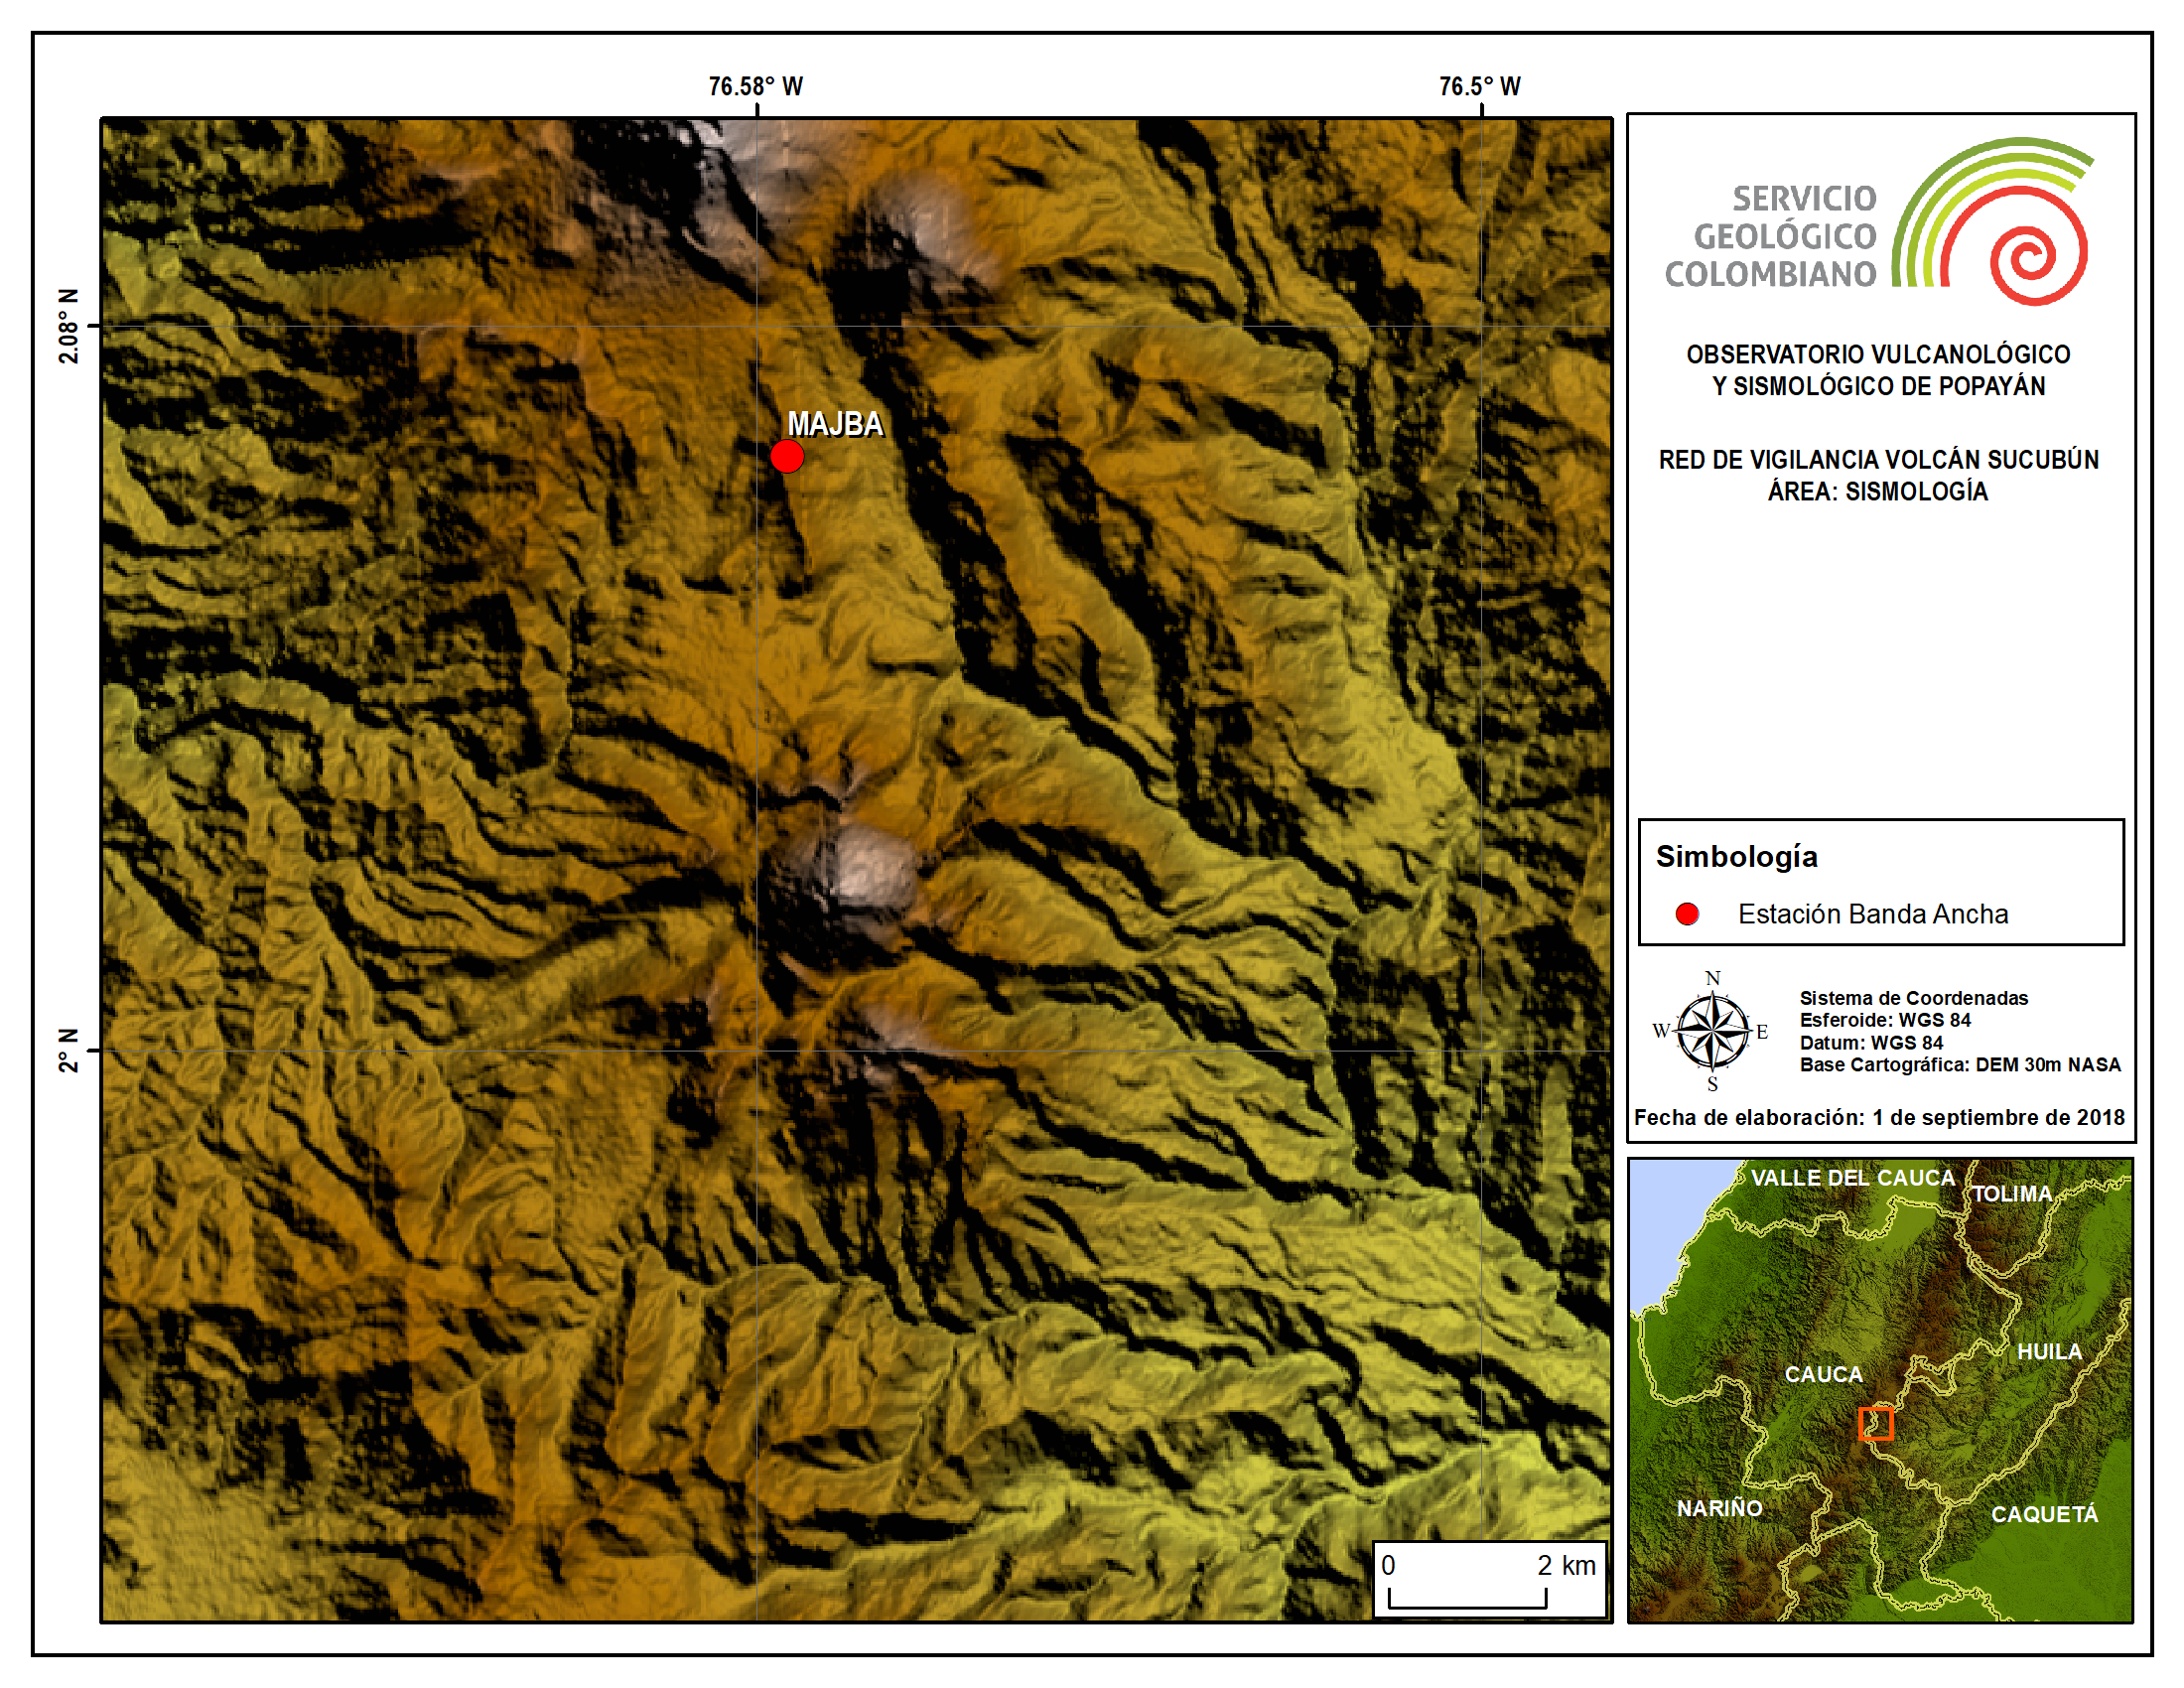 Red de vigilancia sísmica Volcán Sucubún